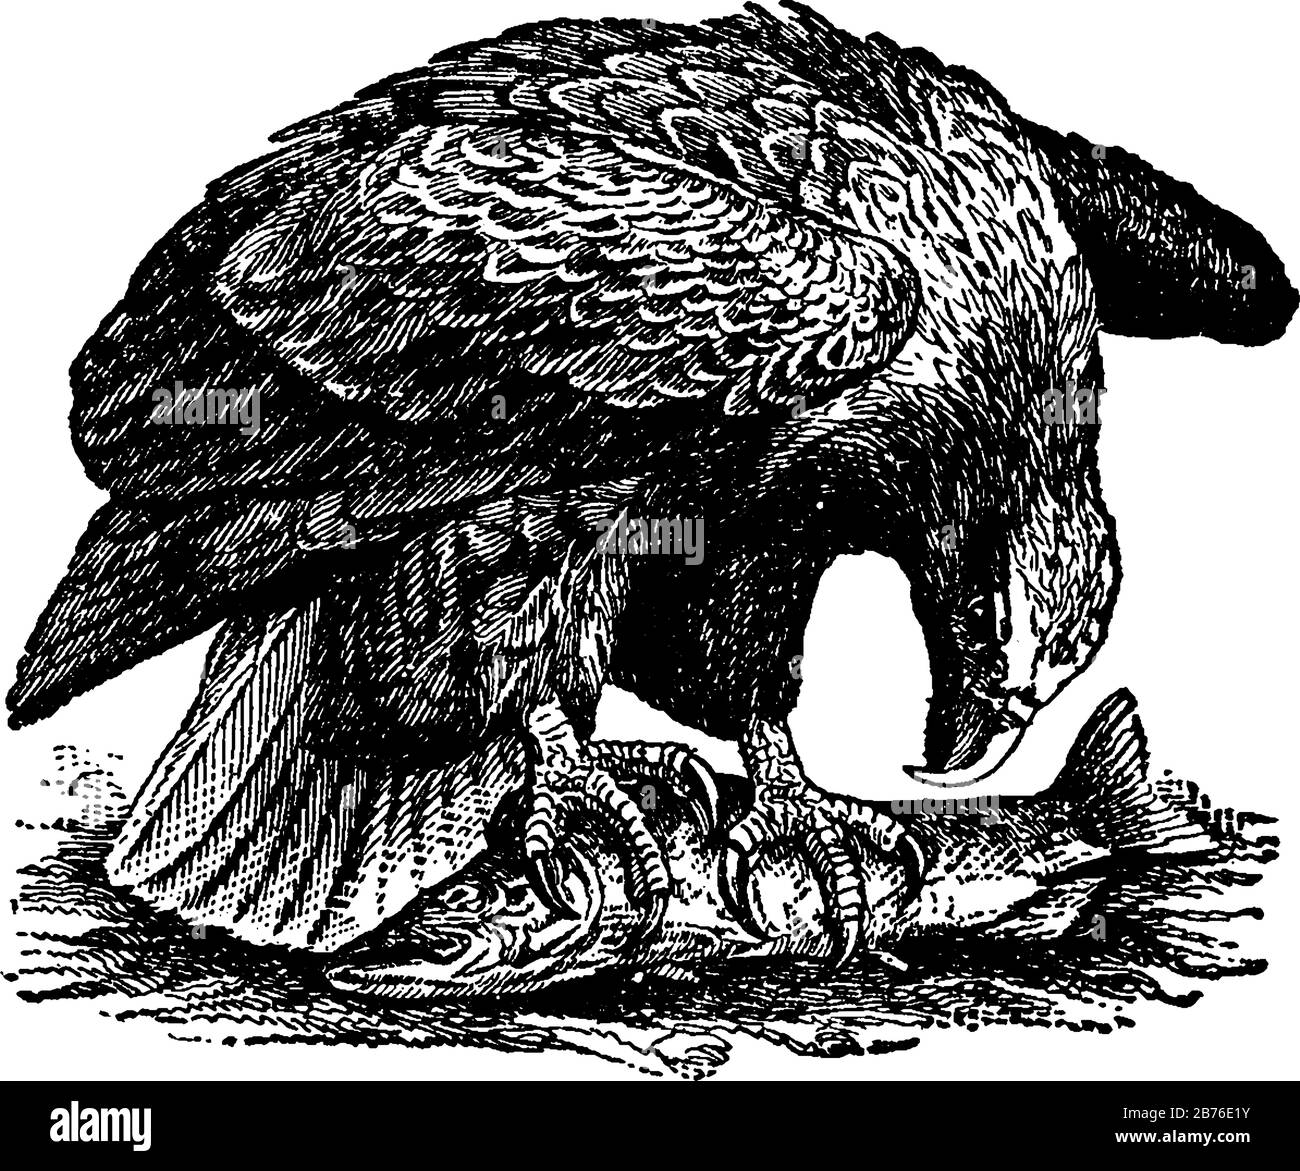 Sea Eagle è un nome dato a molti uccelli rapaci della famiglia Falconidae, disegno di linea d'epoca o illustrazione dell'incisione. Illustrazione Vettoriale